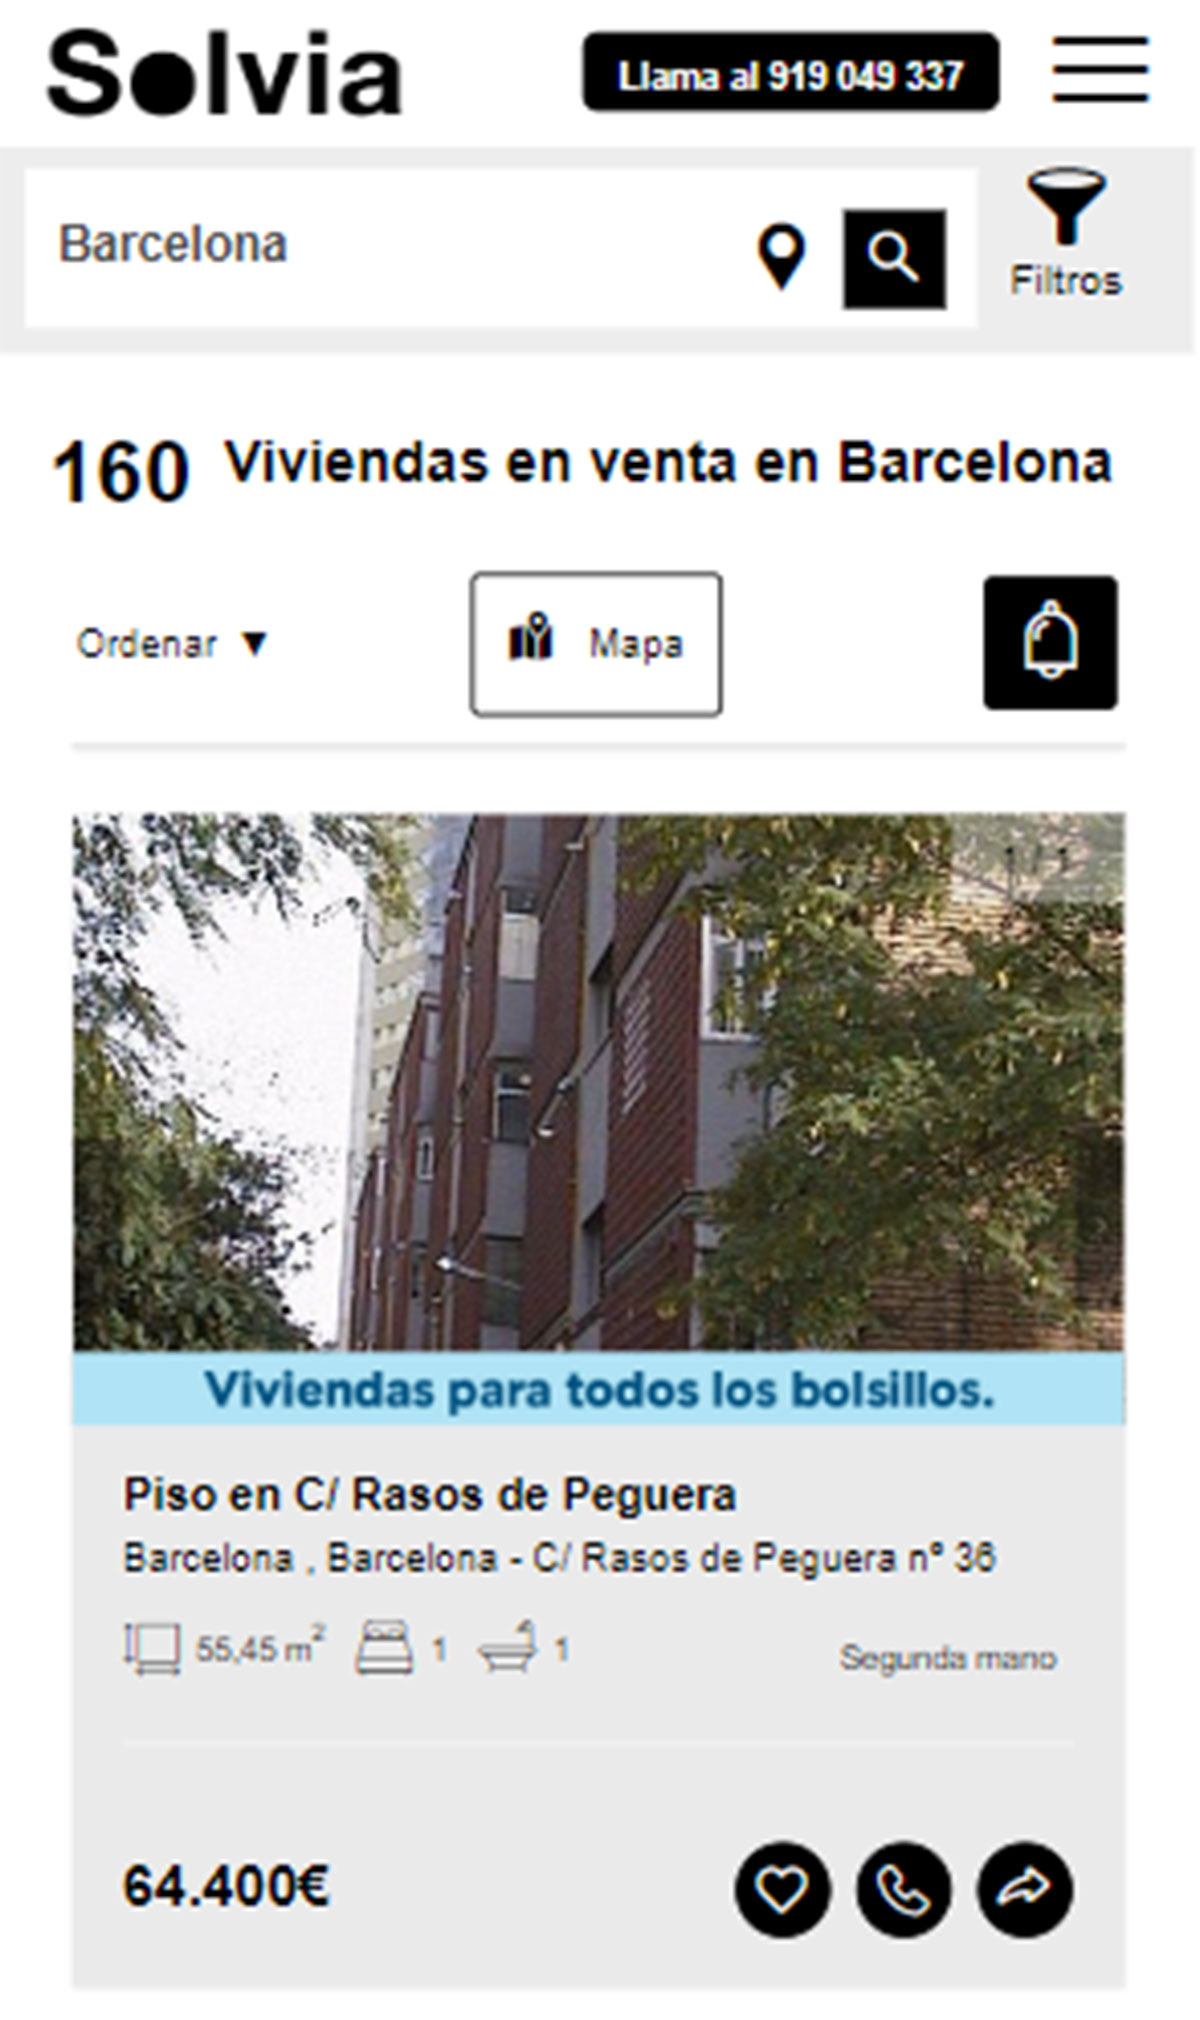 Piso en la ciudad de Barcelona por 64.400 euros